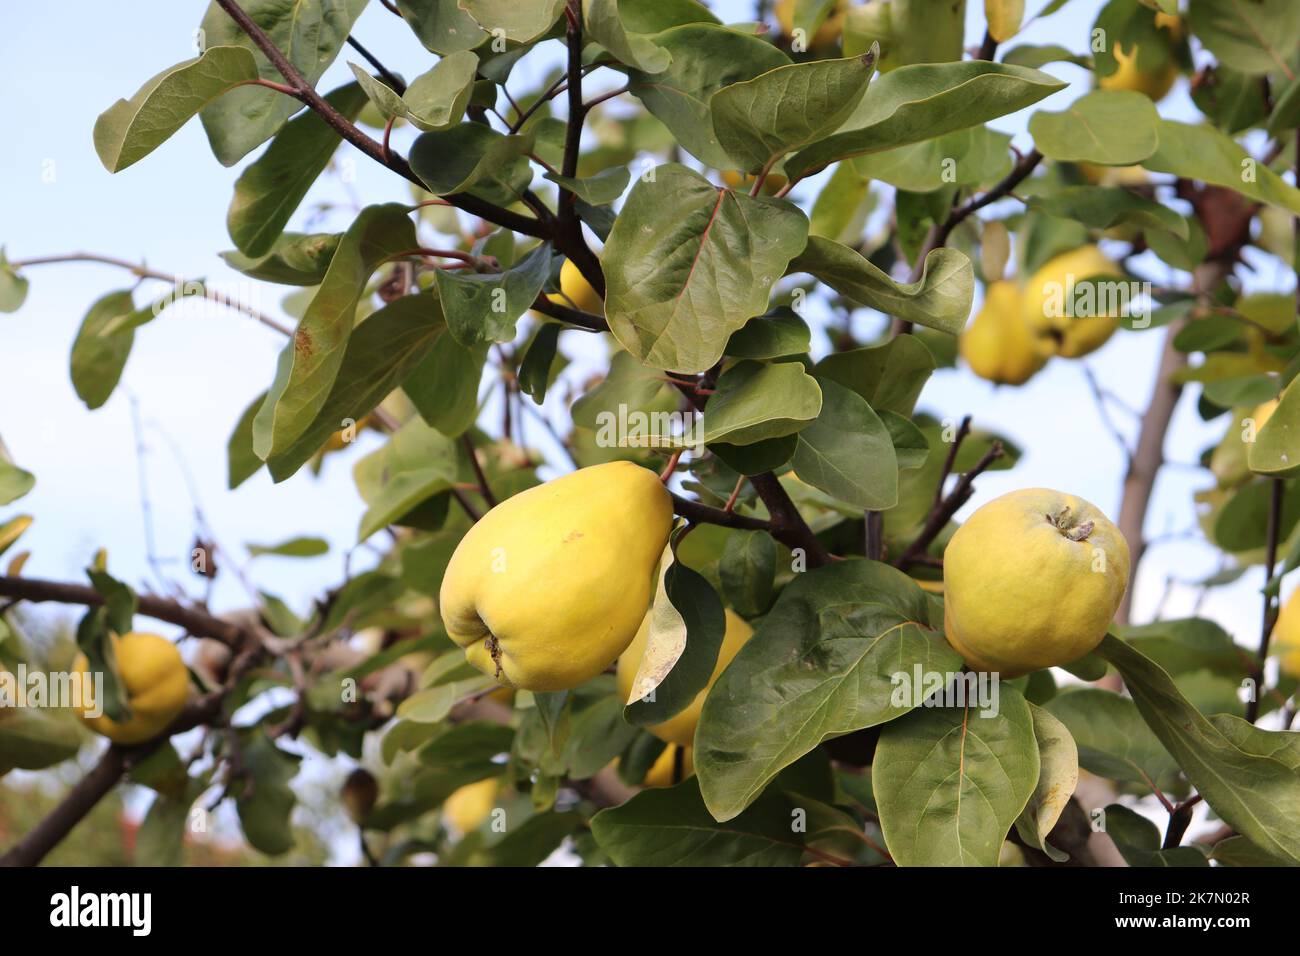 Quitten an einem Quittenbaum erntereif im Oktober gelbe große Frucht optisch eine Mischung aus Apfel und Birne Stock Photo